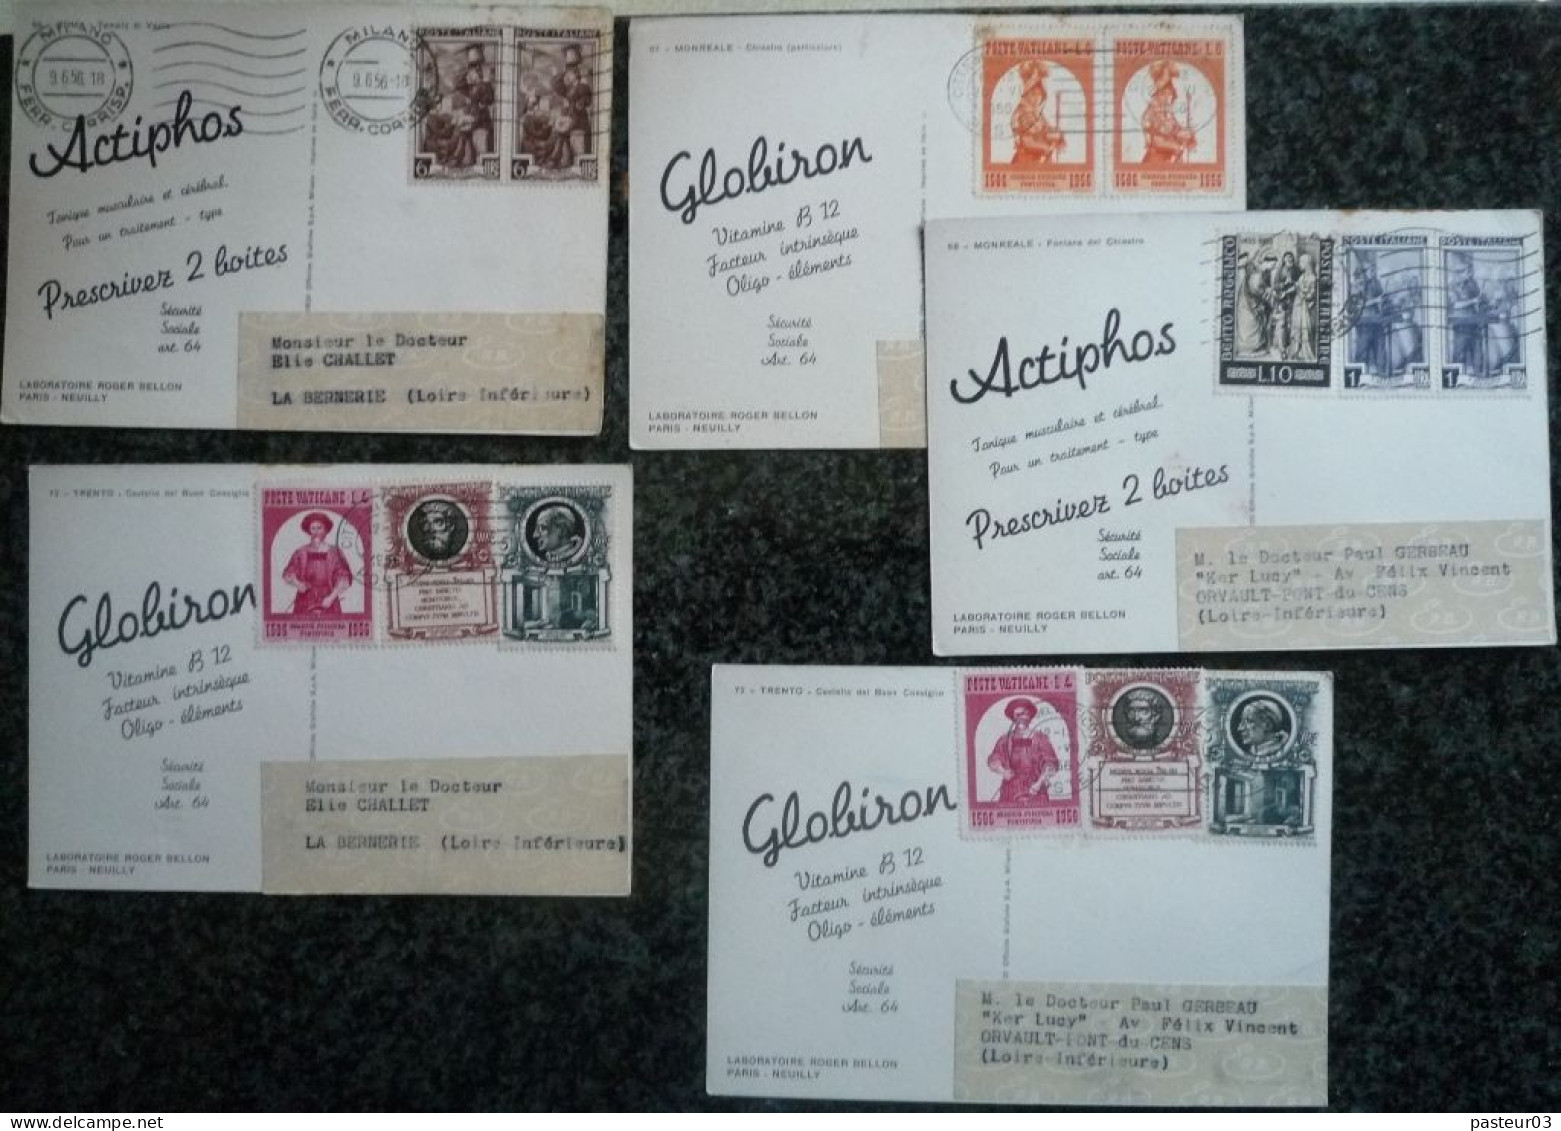 Lot de 95 Cartes Postales Laboratoires Roger BELLON Paris Neuilly vues d'Italie